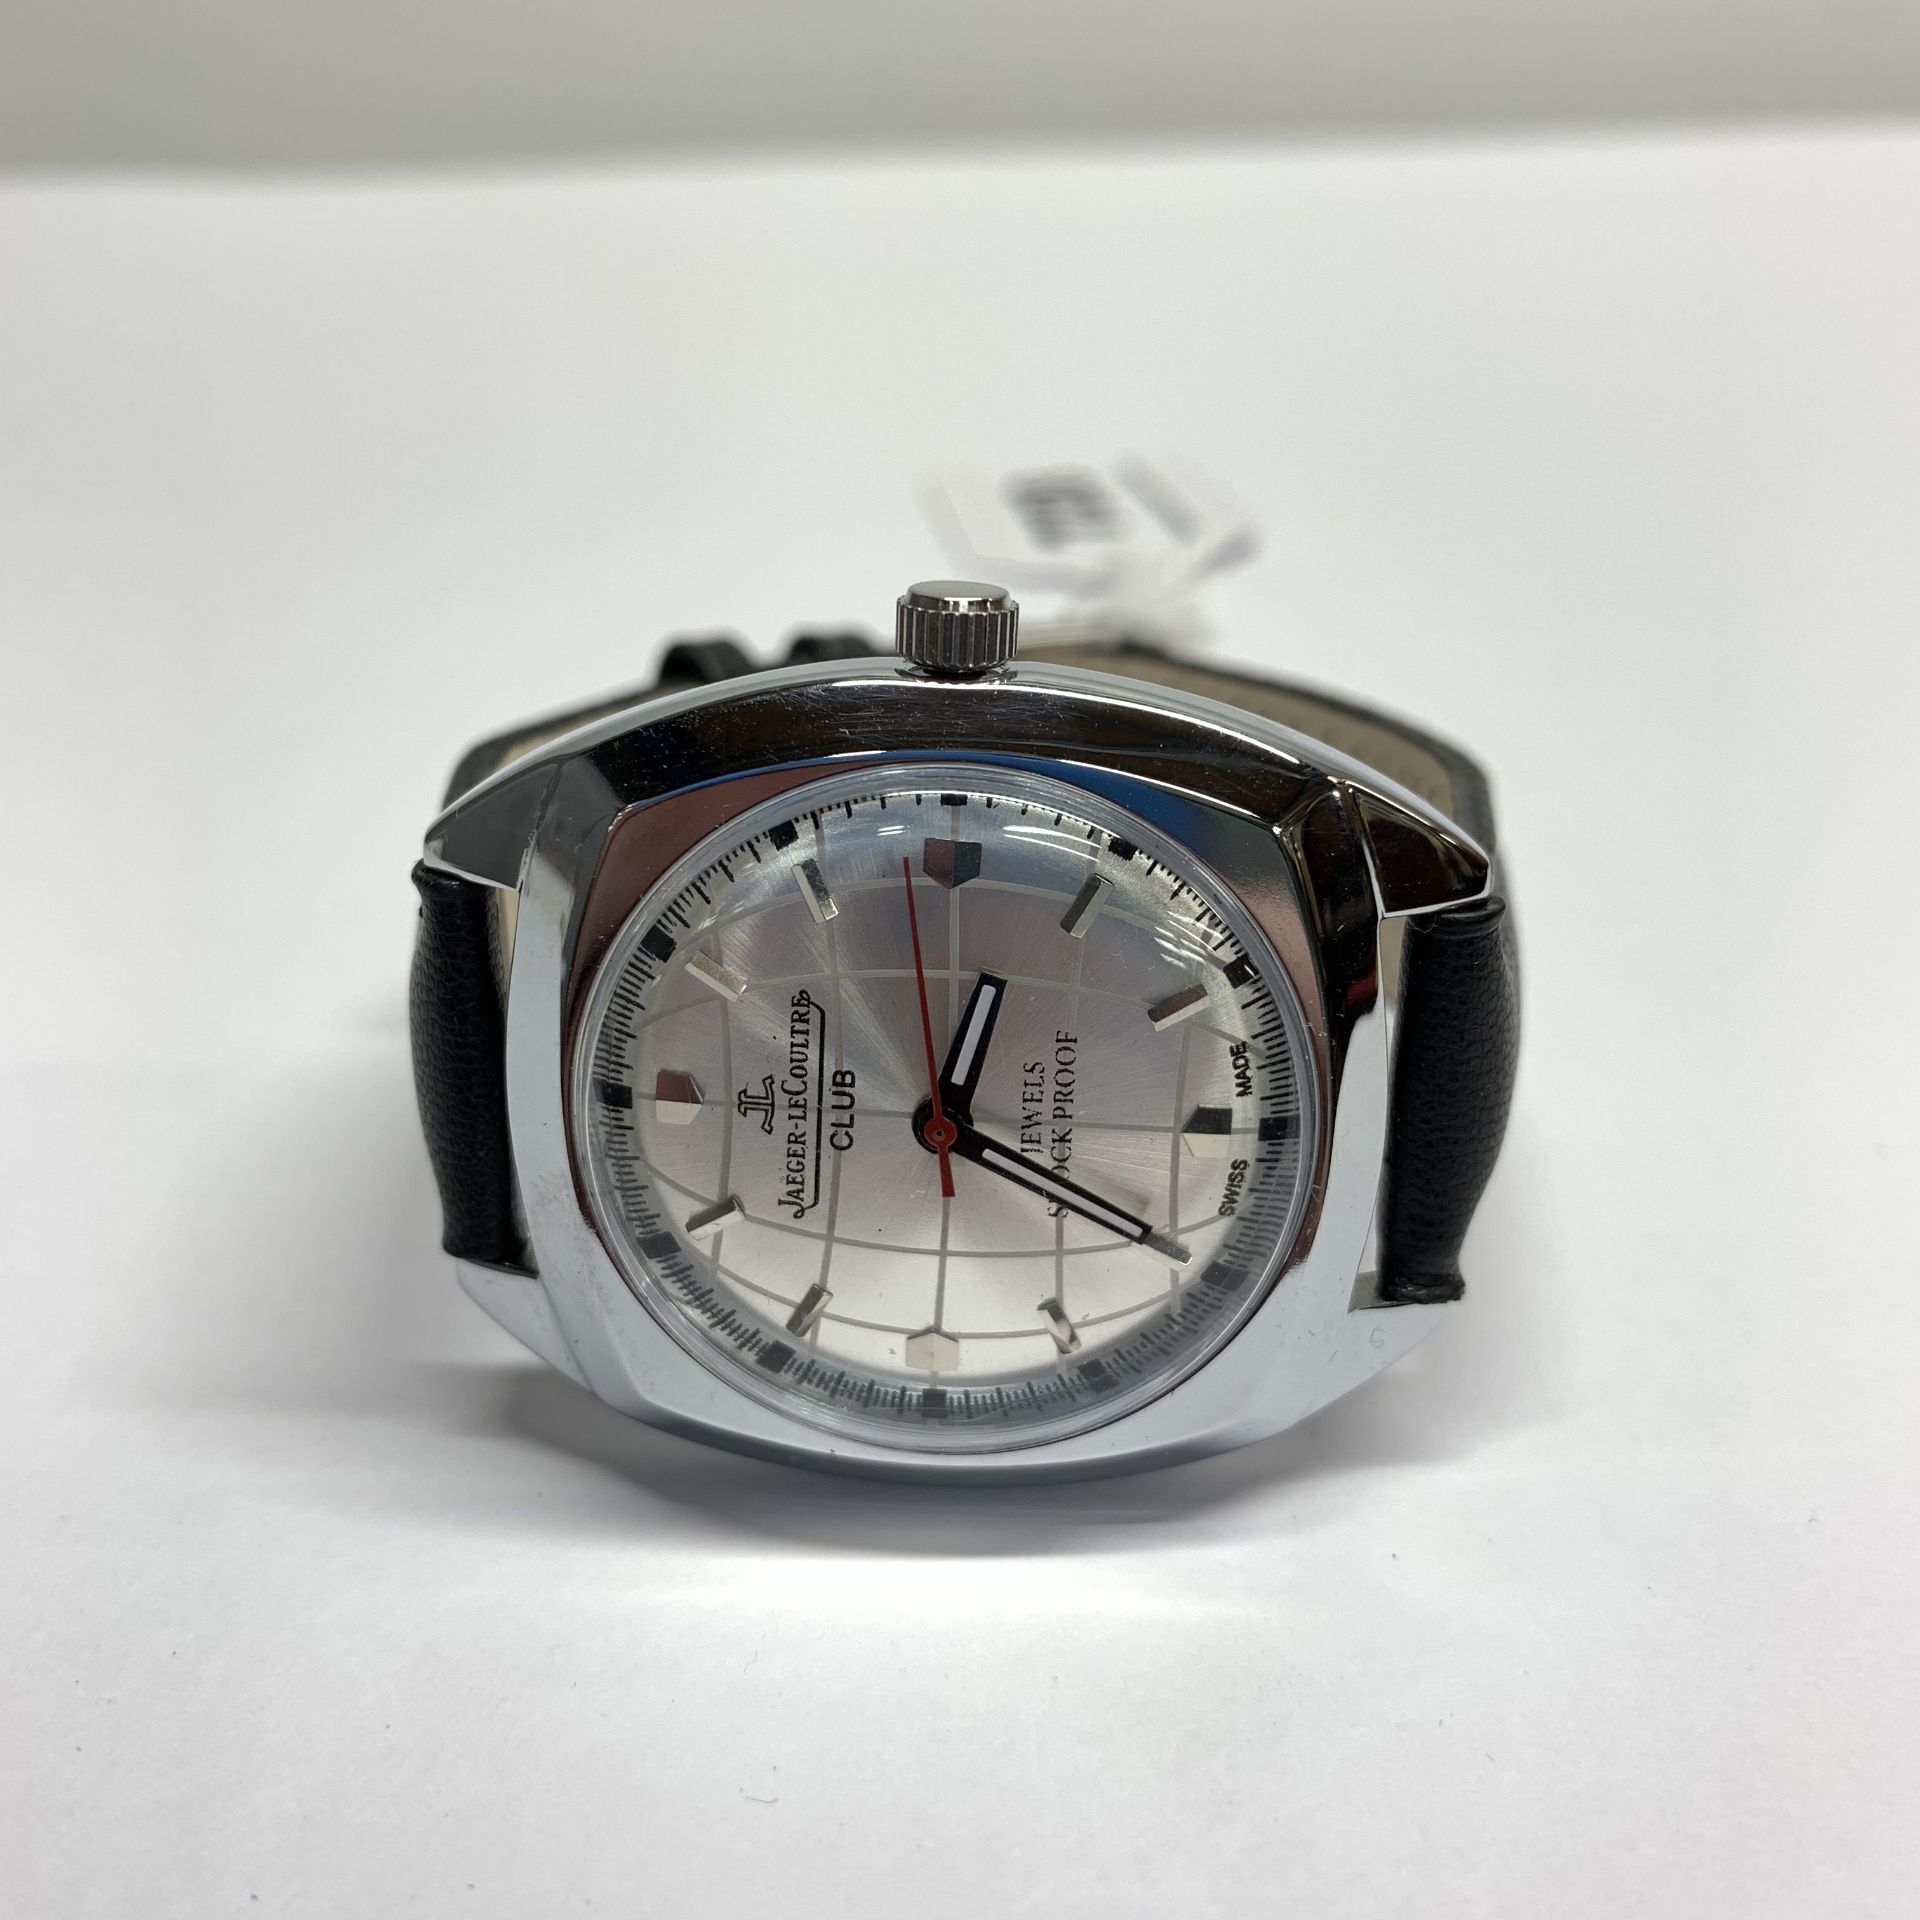 A gentleman's vintage Jaeger Le Coultre automatic wrist watch.